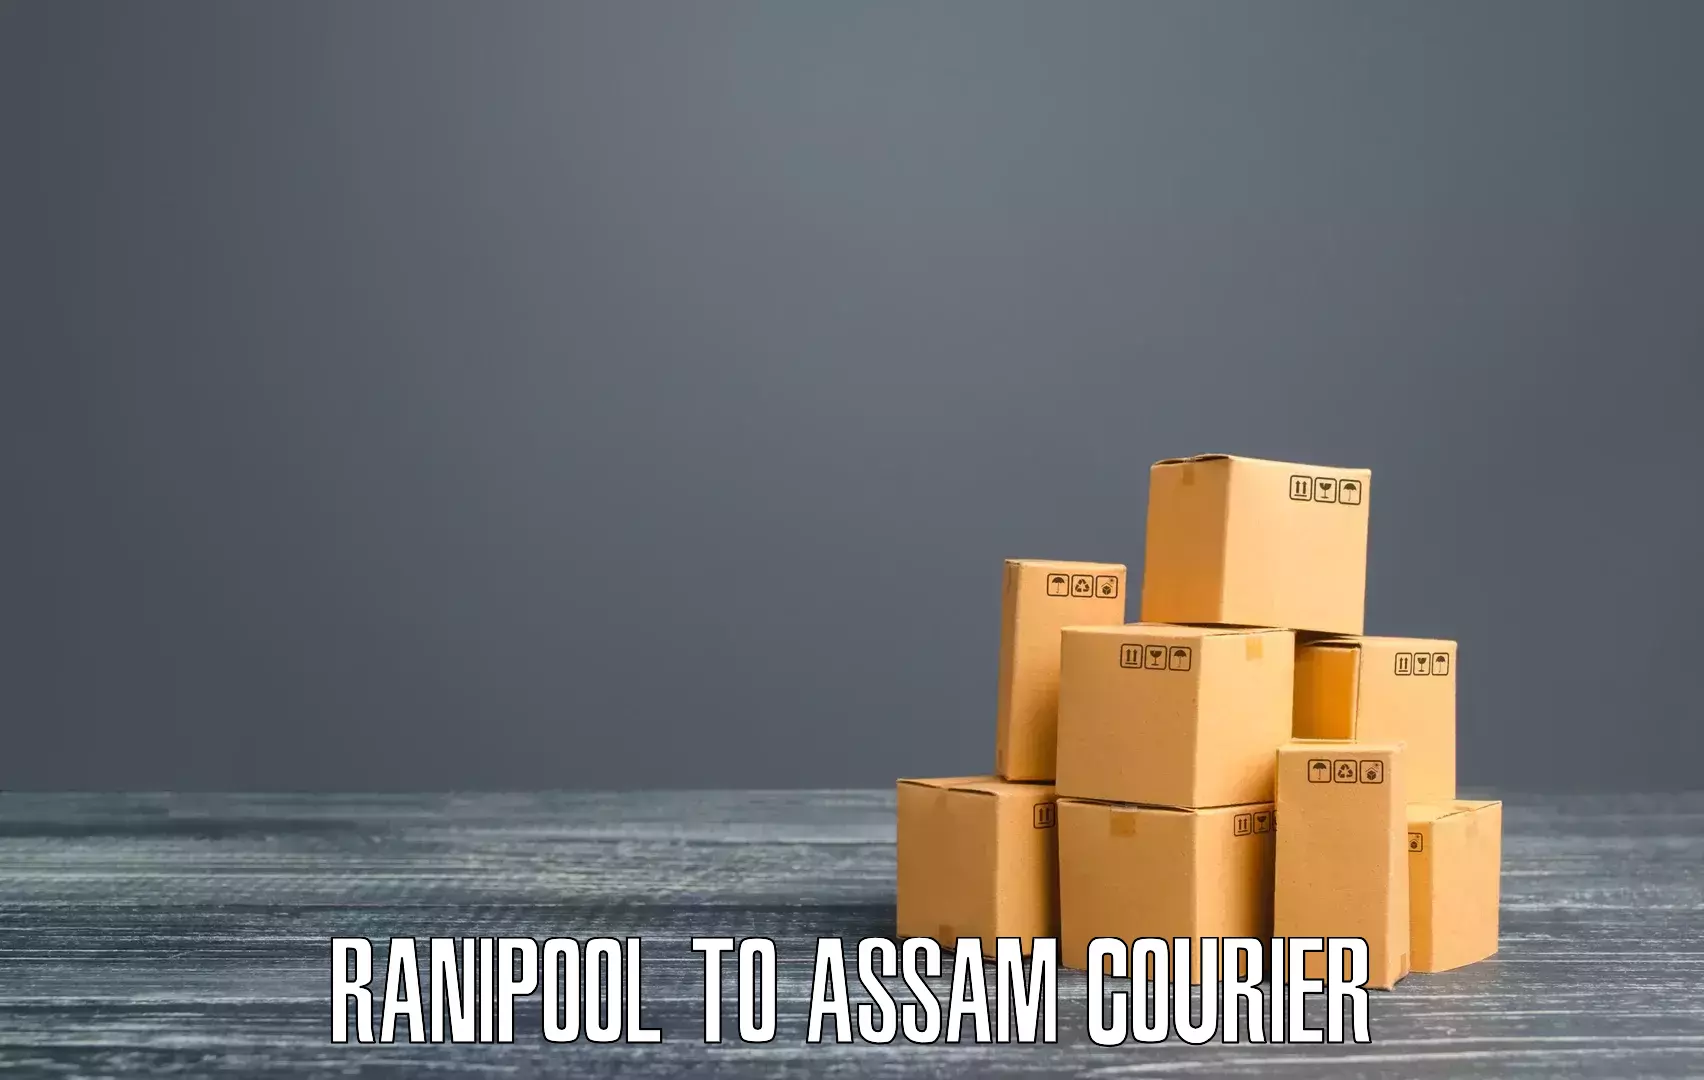 Discounted shipping in Ranipool to IIIT Guwahati